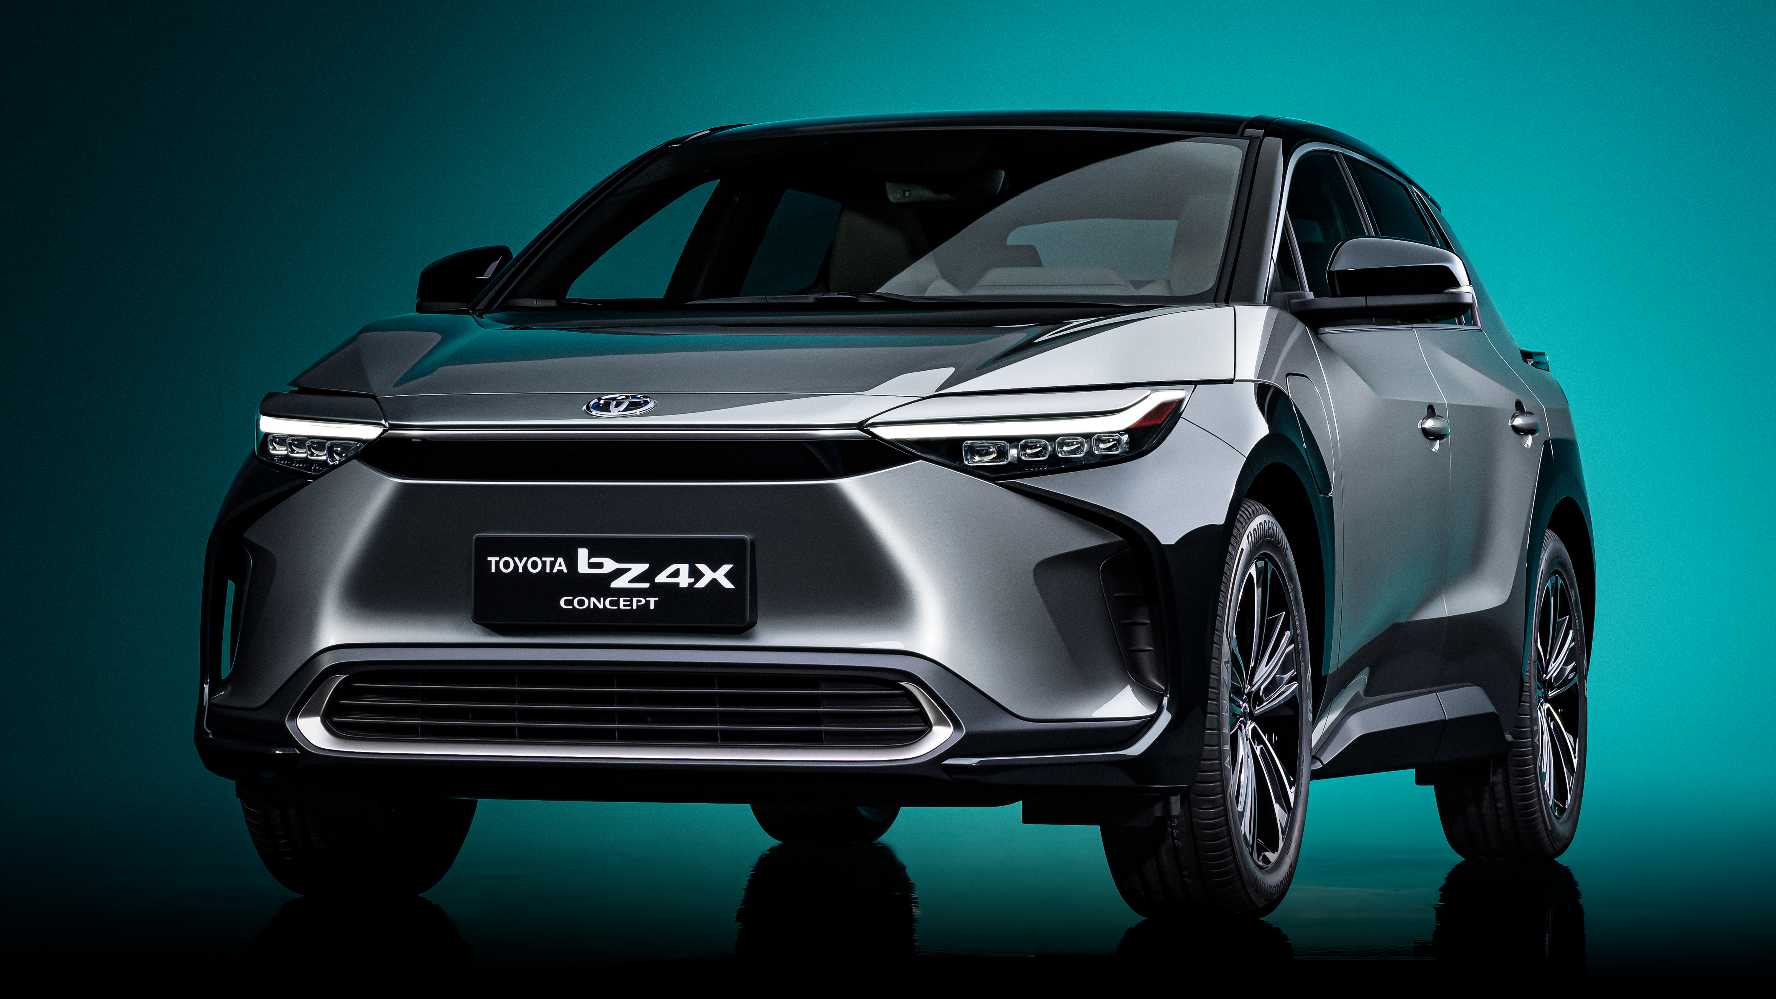 El primer BEV global de Toyota, el SUV bZ4x, solo entrará en producción en 2022. Imagen: Toyota